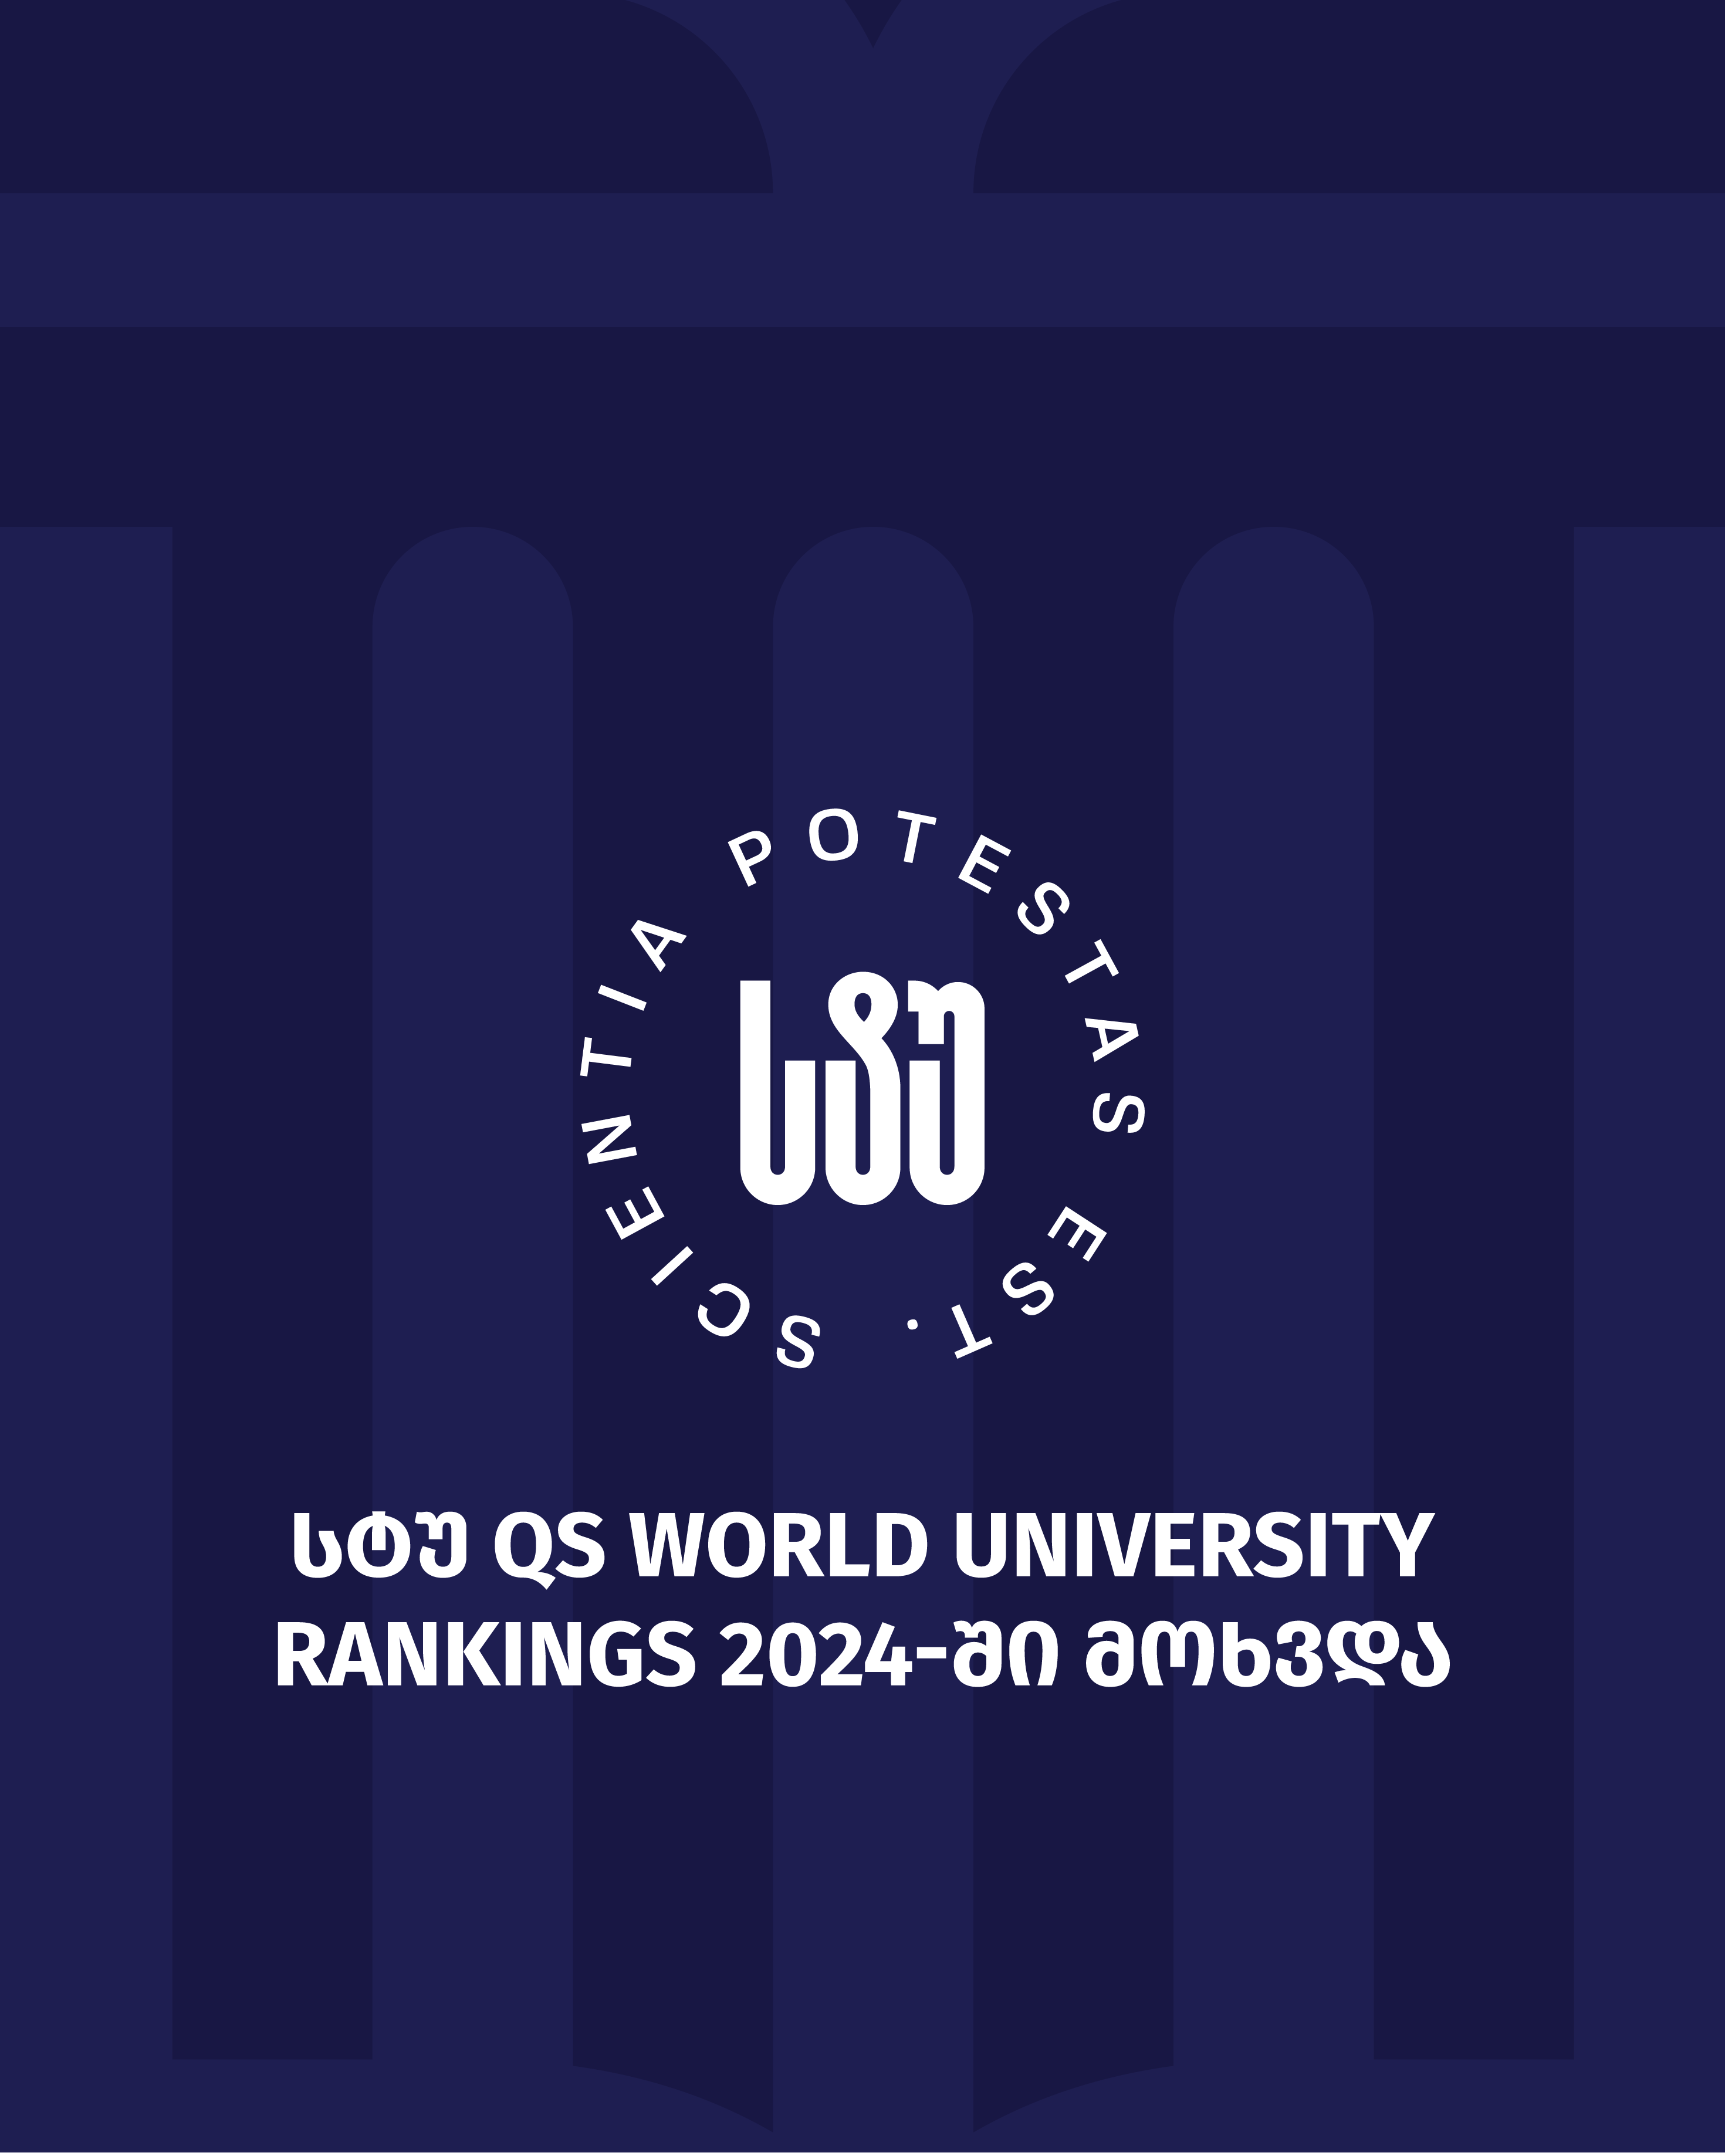 საქართველოს ტექნიკური უნივერსიტეტი ავტორიტეტულმა კომპანია QS-მა მსოფლიო უნივერსიტეტების საერთაშორისო რეიტინგის მოკლე სიაში შეიყვანა 